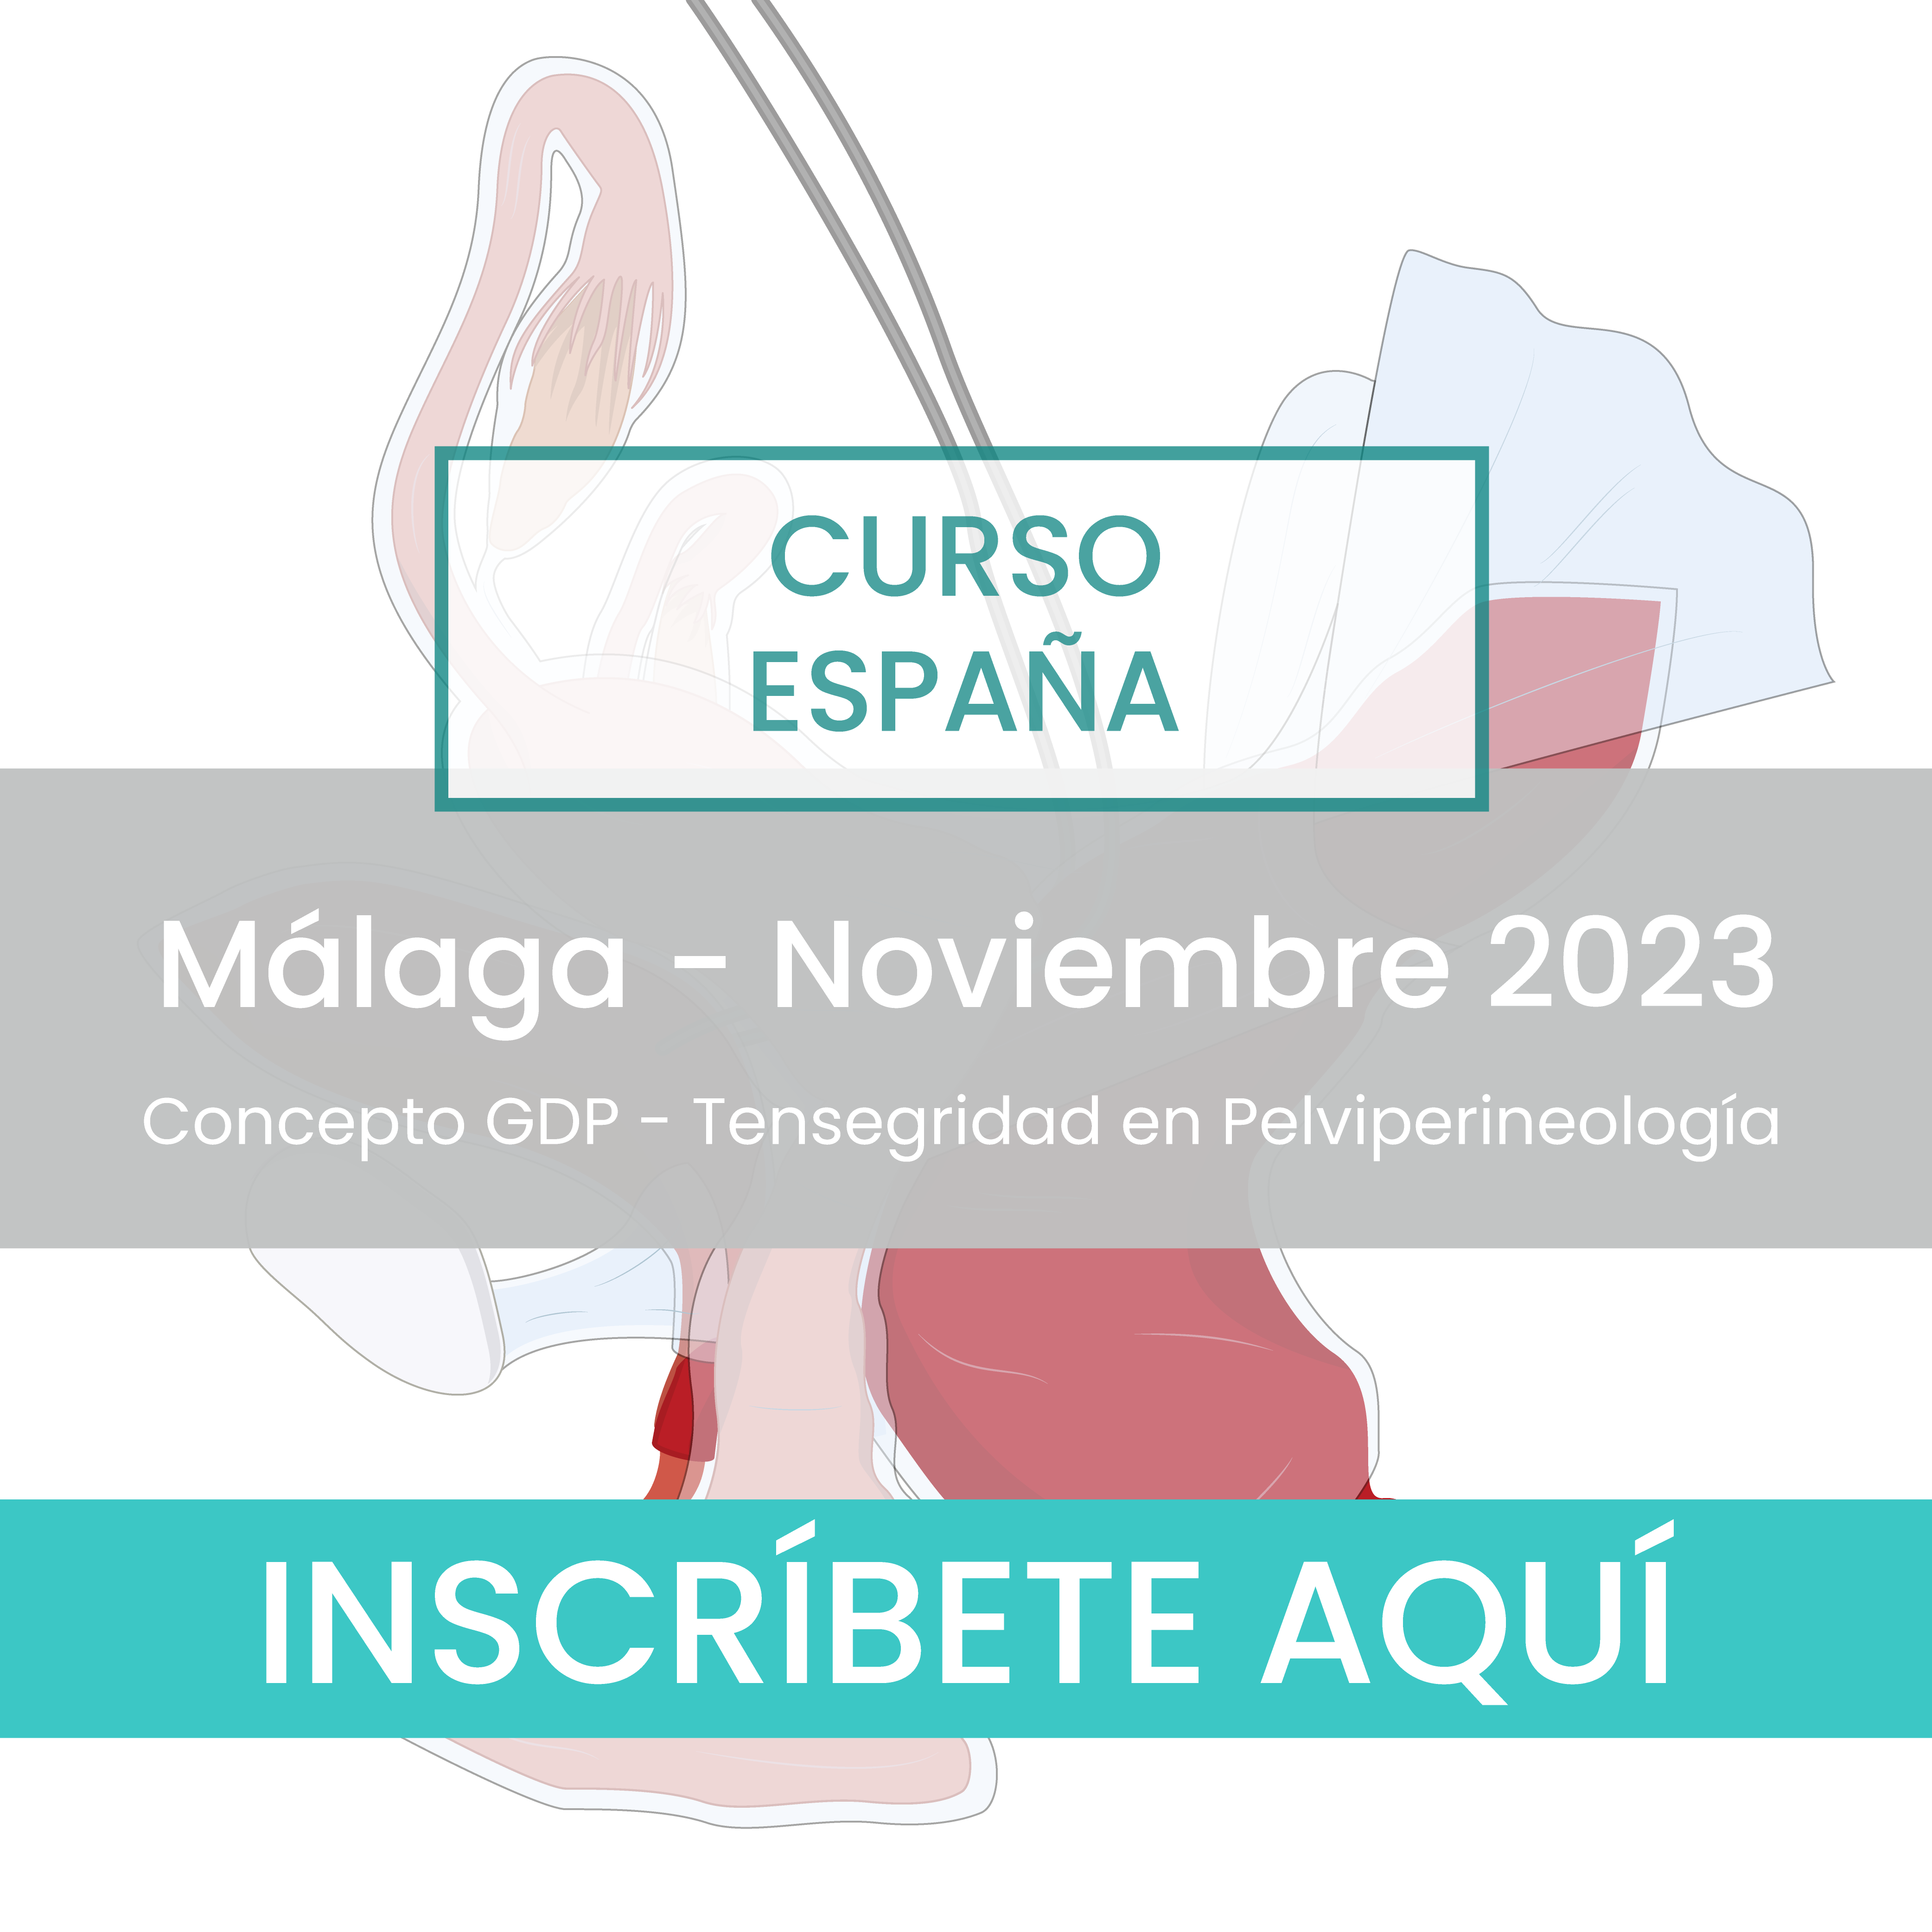 Concepto GDP Málaga